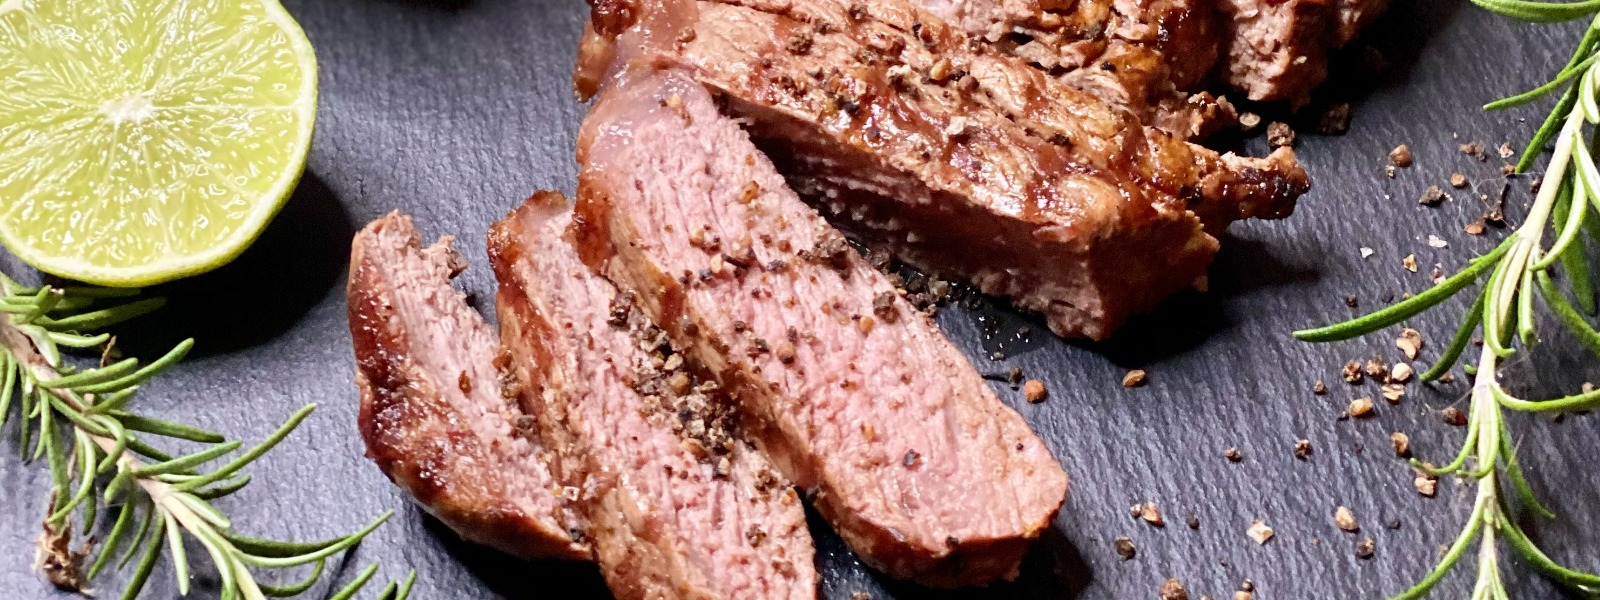 steaks vom weiderind kaufen greenox bio